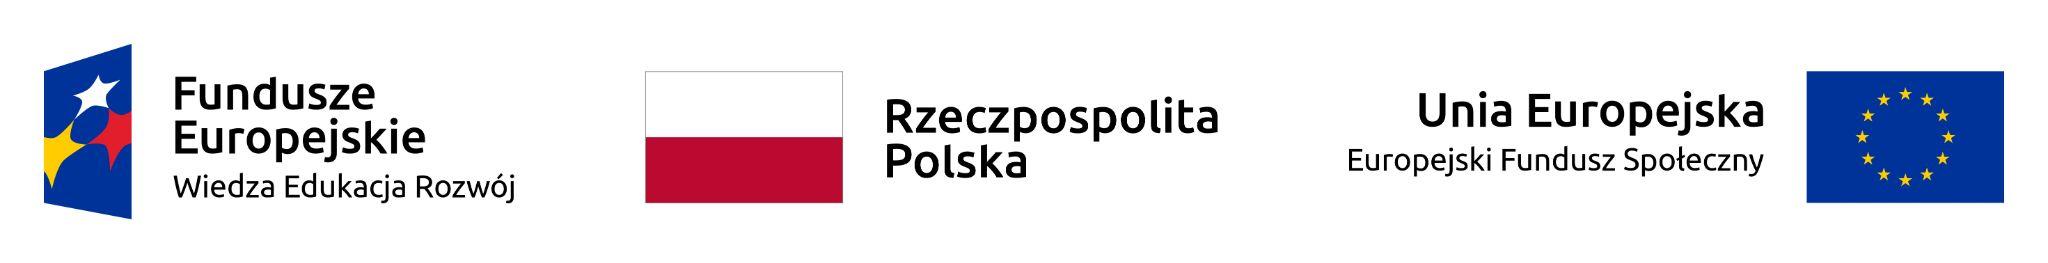 Wymagane logotyypy Europejski Fundusz Społeczny, Unia Europejska, Flaga Polski